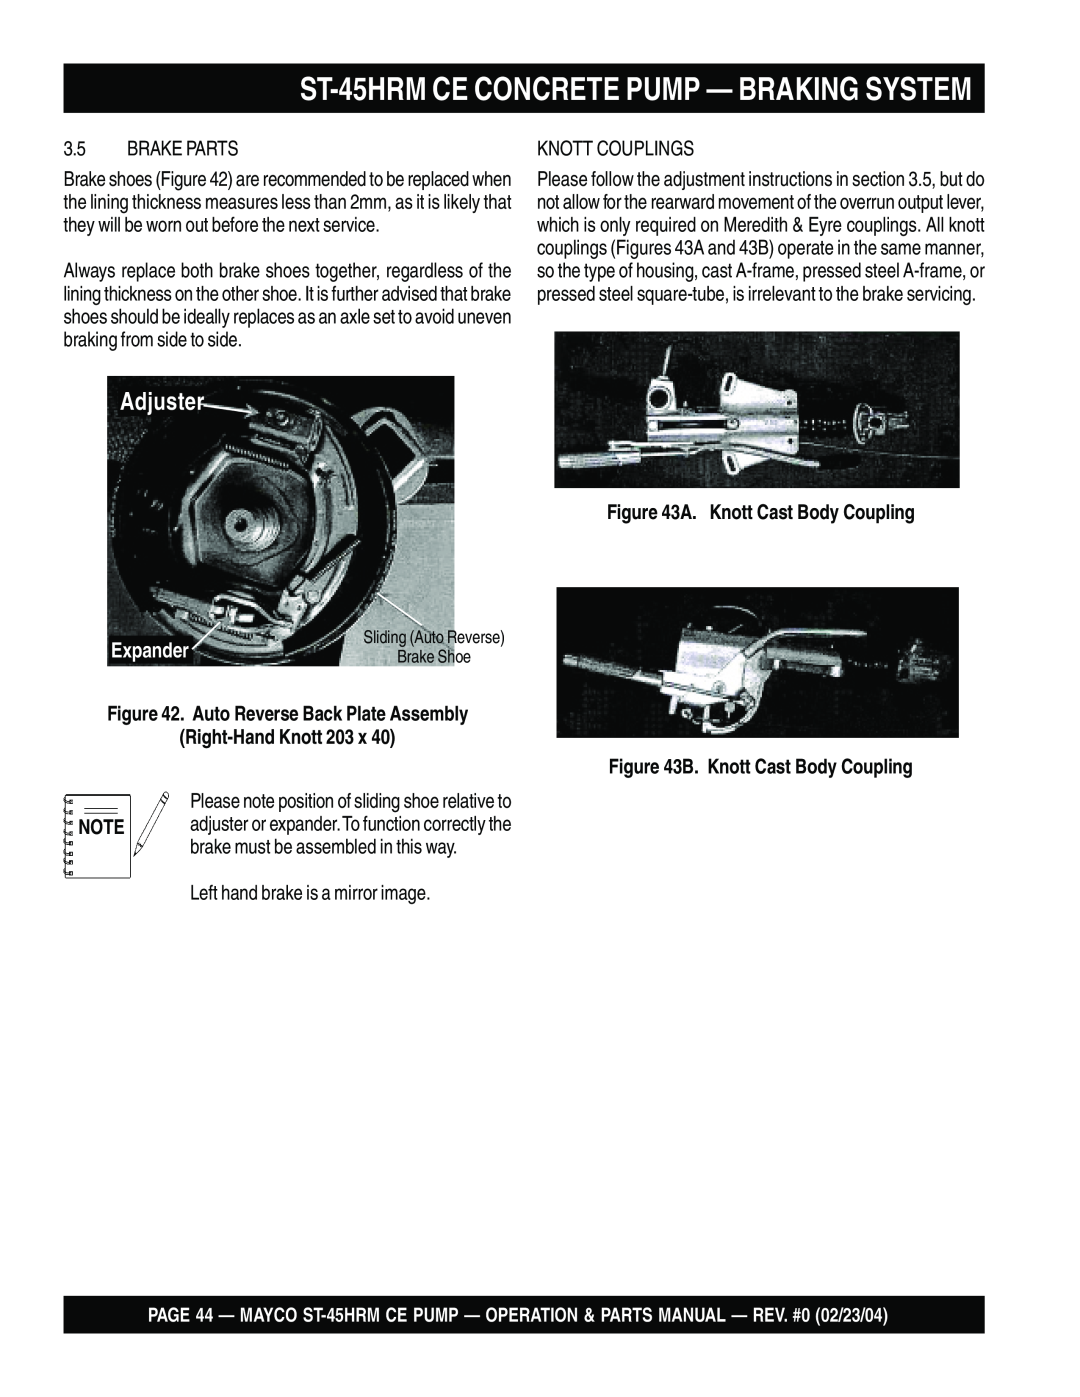 Multiquip ST-45HRM CE manual Adjuster, ST-45HRMCE CONCRETE PUMP — BRAKING SYSTEM, Expander, A. Knott Cast Body Coupling 